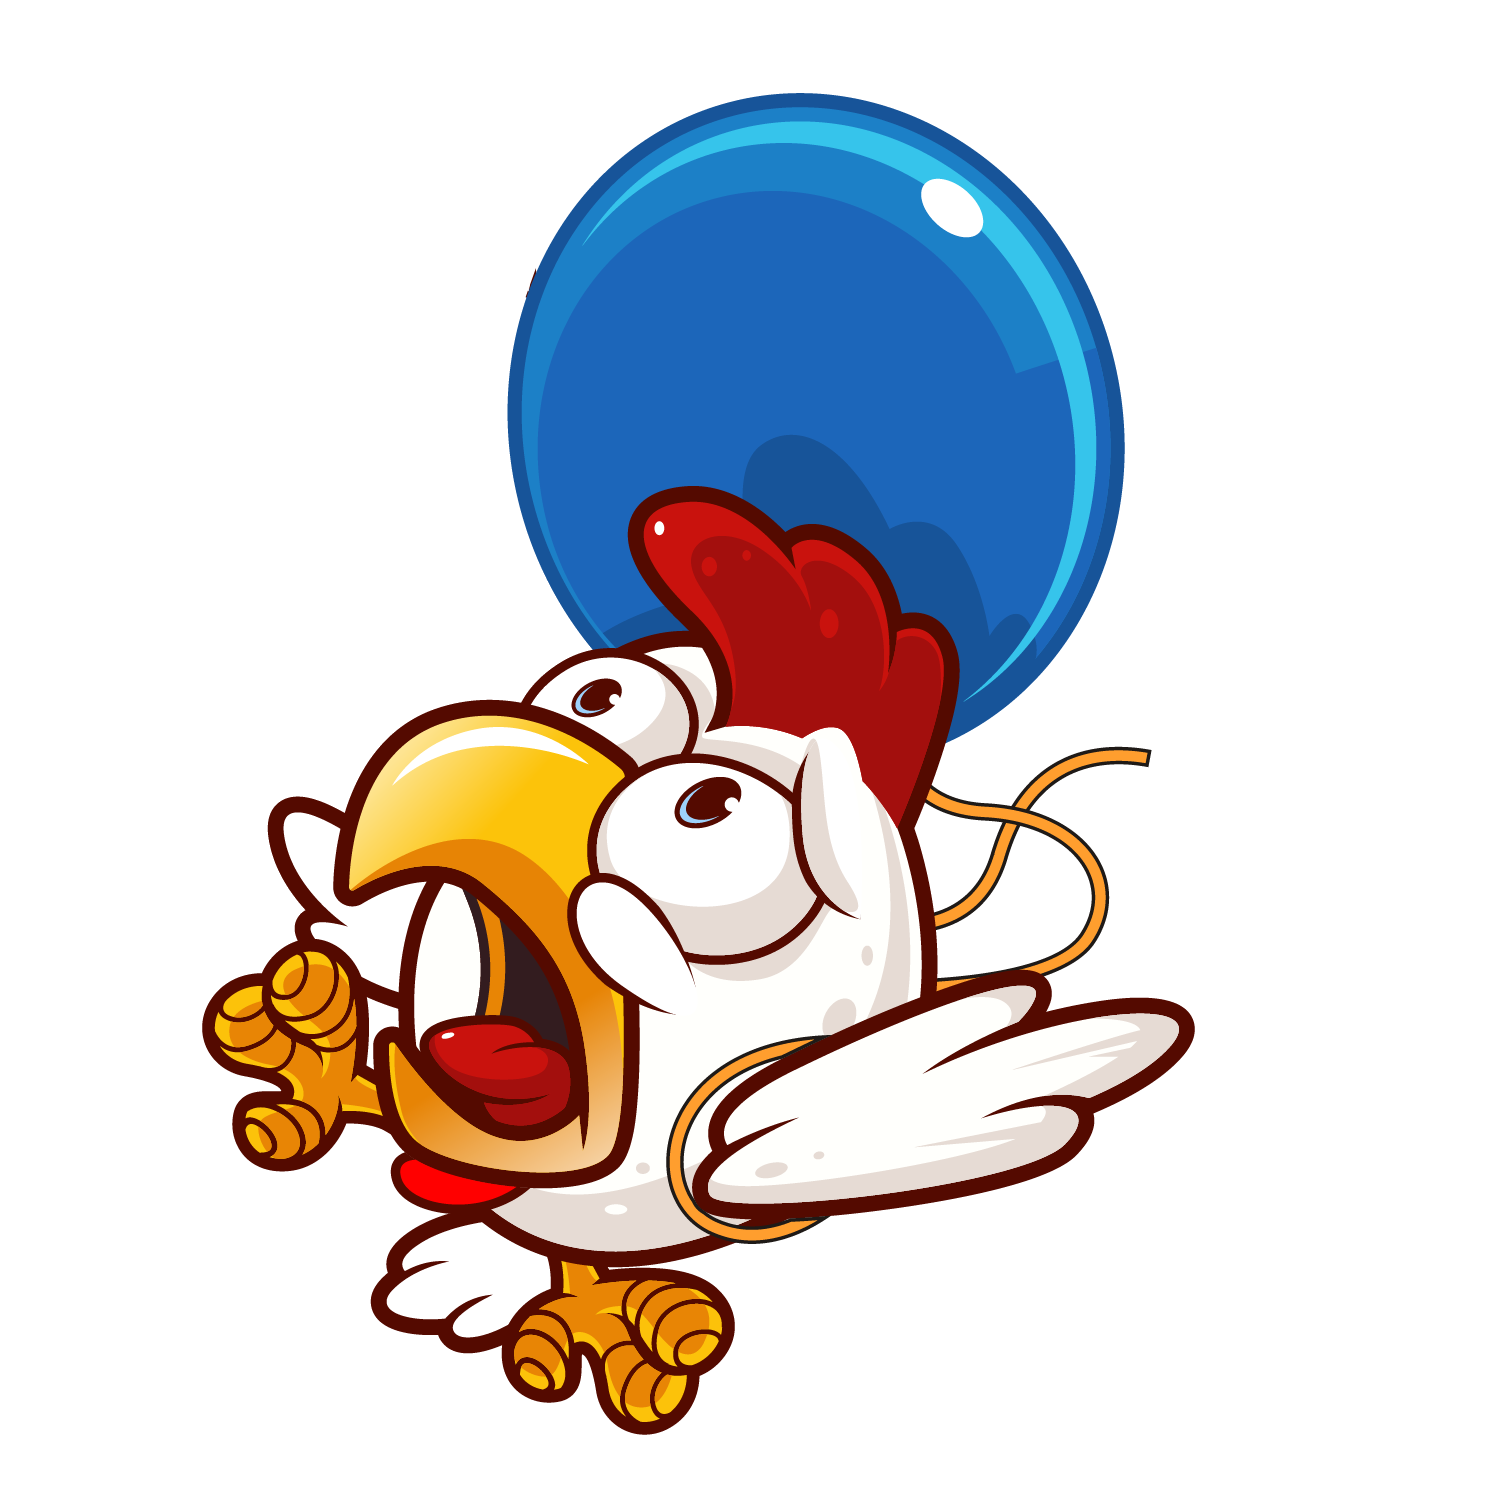 Balloon fighter chicken